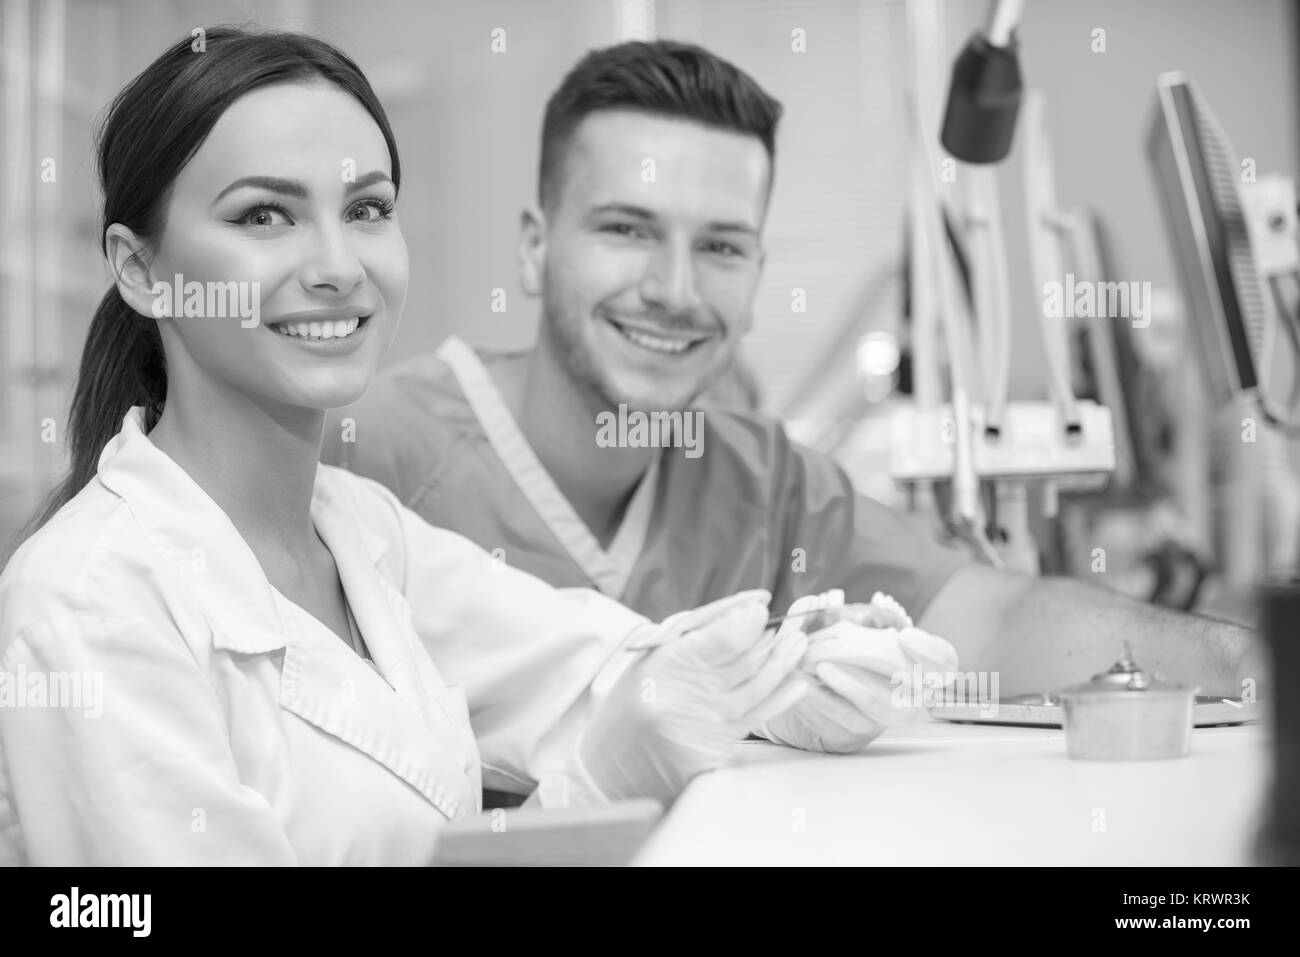 Zahnersatz, Mundhygiene. Prothetik Hände während der Arbeit am Gebiß, falsche Zähne, eine Studie und eine Tabelle mit den zahnmedizinischen Werkzeugen. Stockfoto